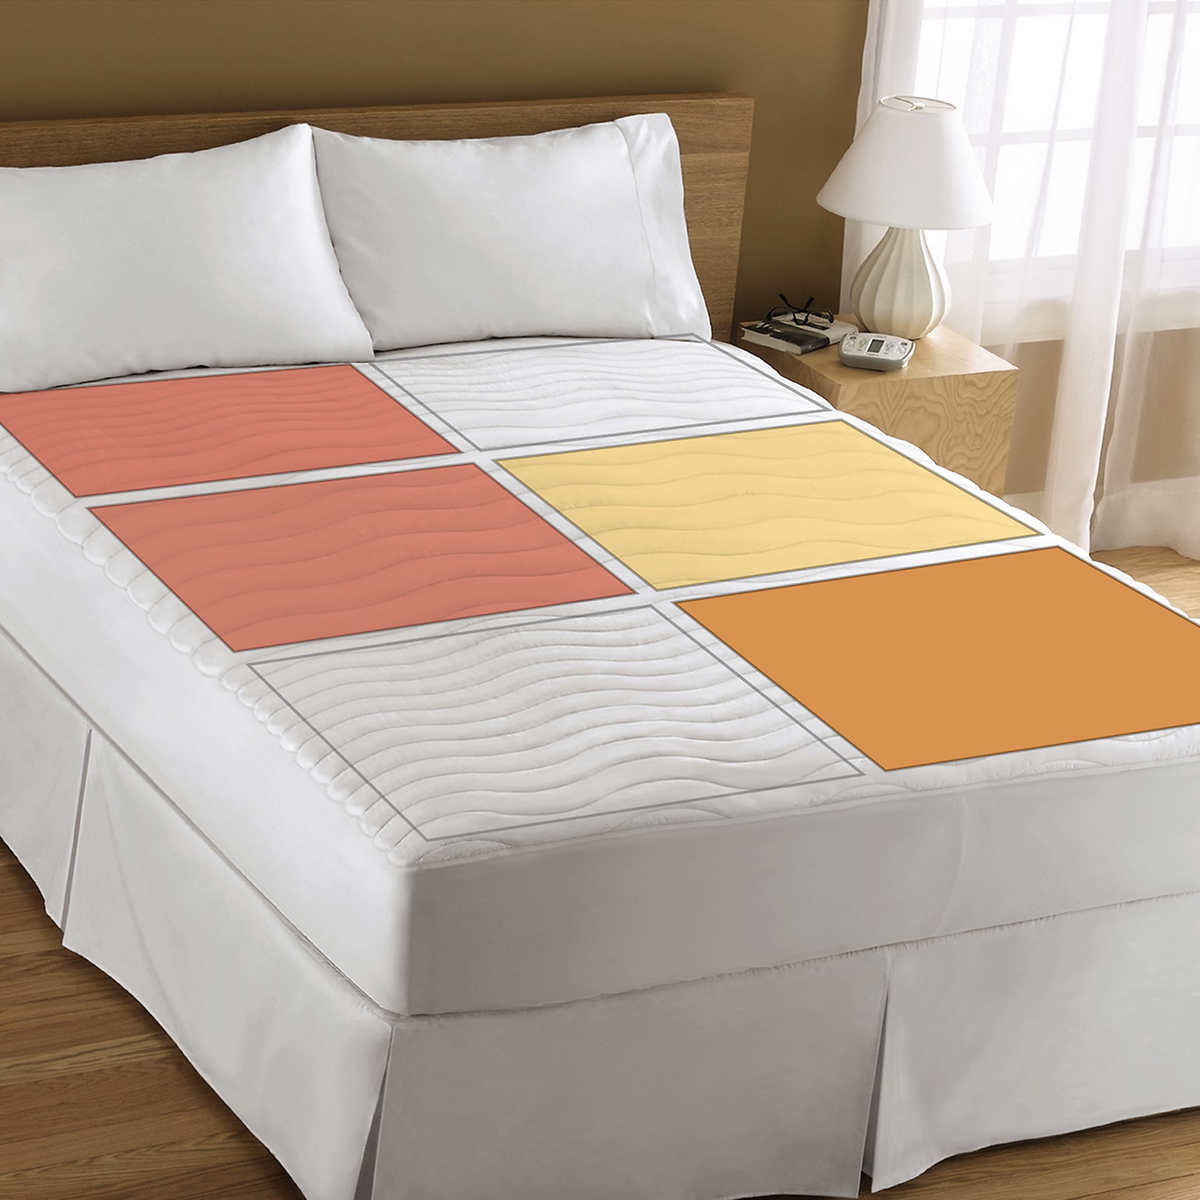 sunbeam heated mattress pad queen